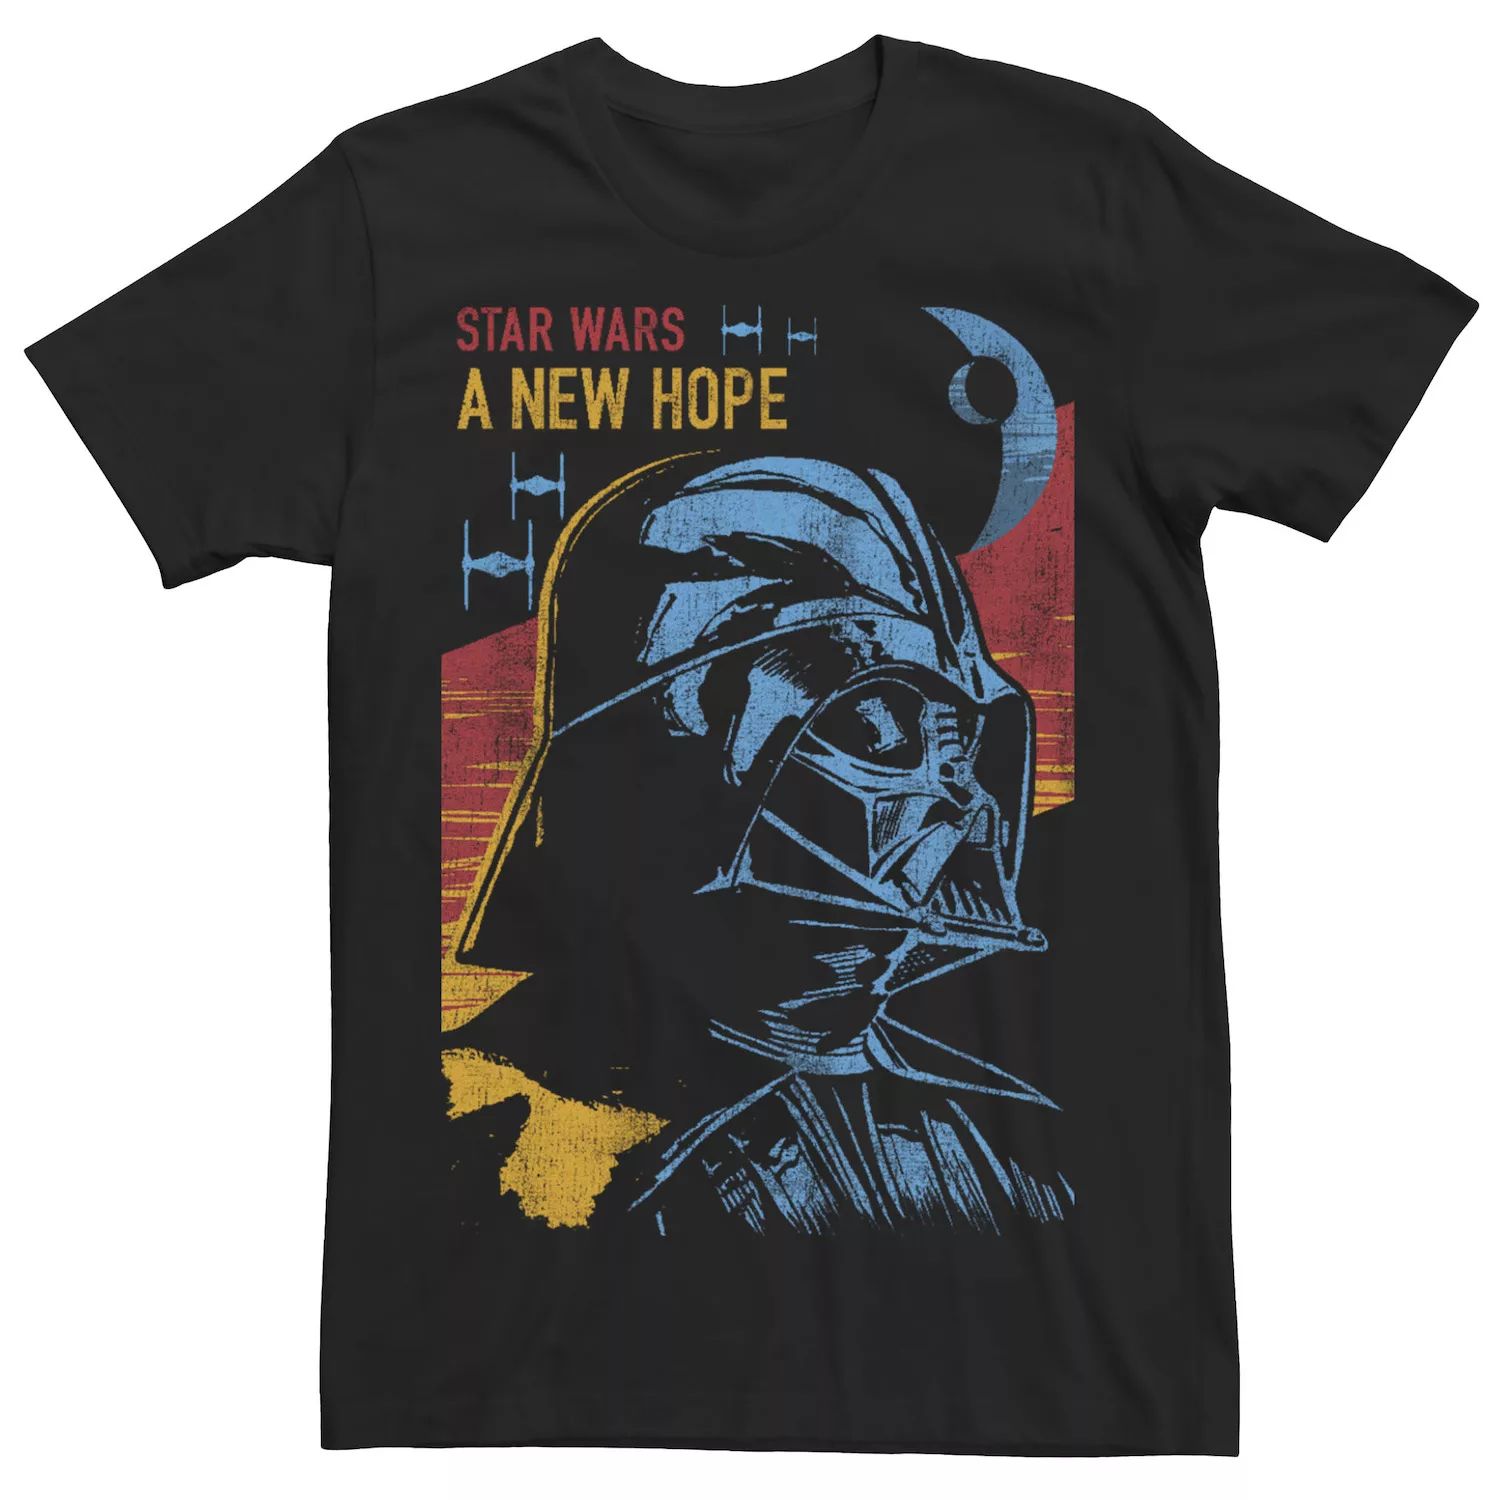 Мужская футболка «Звездные войны: Дарт Вейдер» смотрит на новую футболку «Надежда» Star Wars, черный